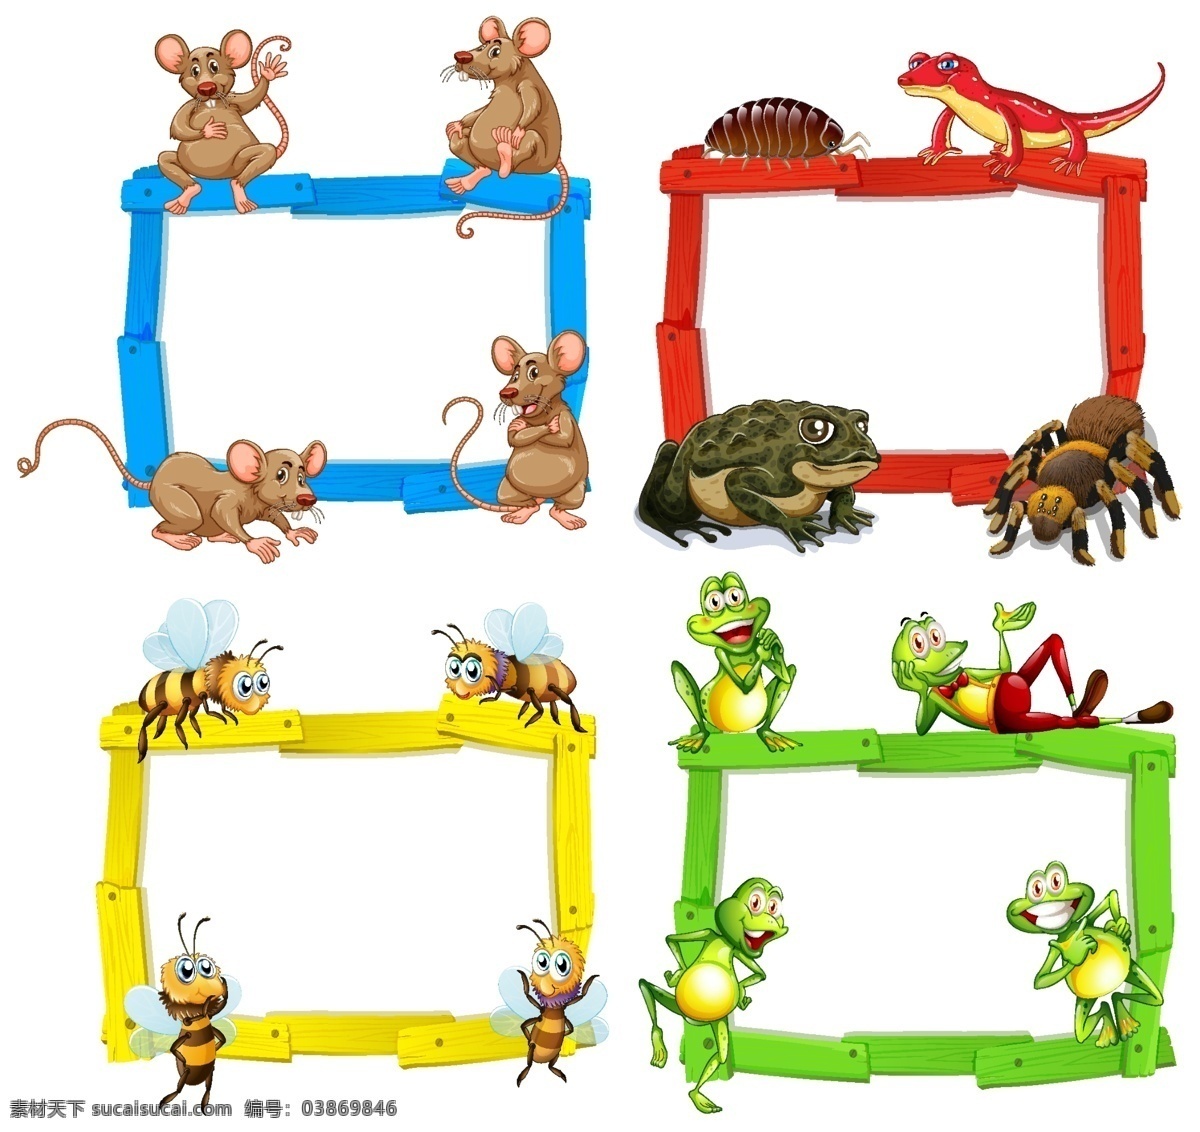 动物 文本 动物和文本 卡通动物 空白板 记事 幼儿园 动物素材 动物背景 卡通动物生物